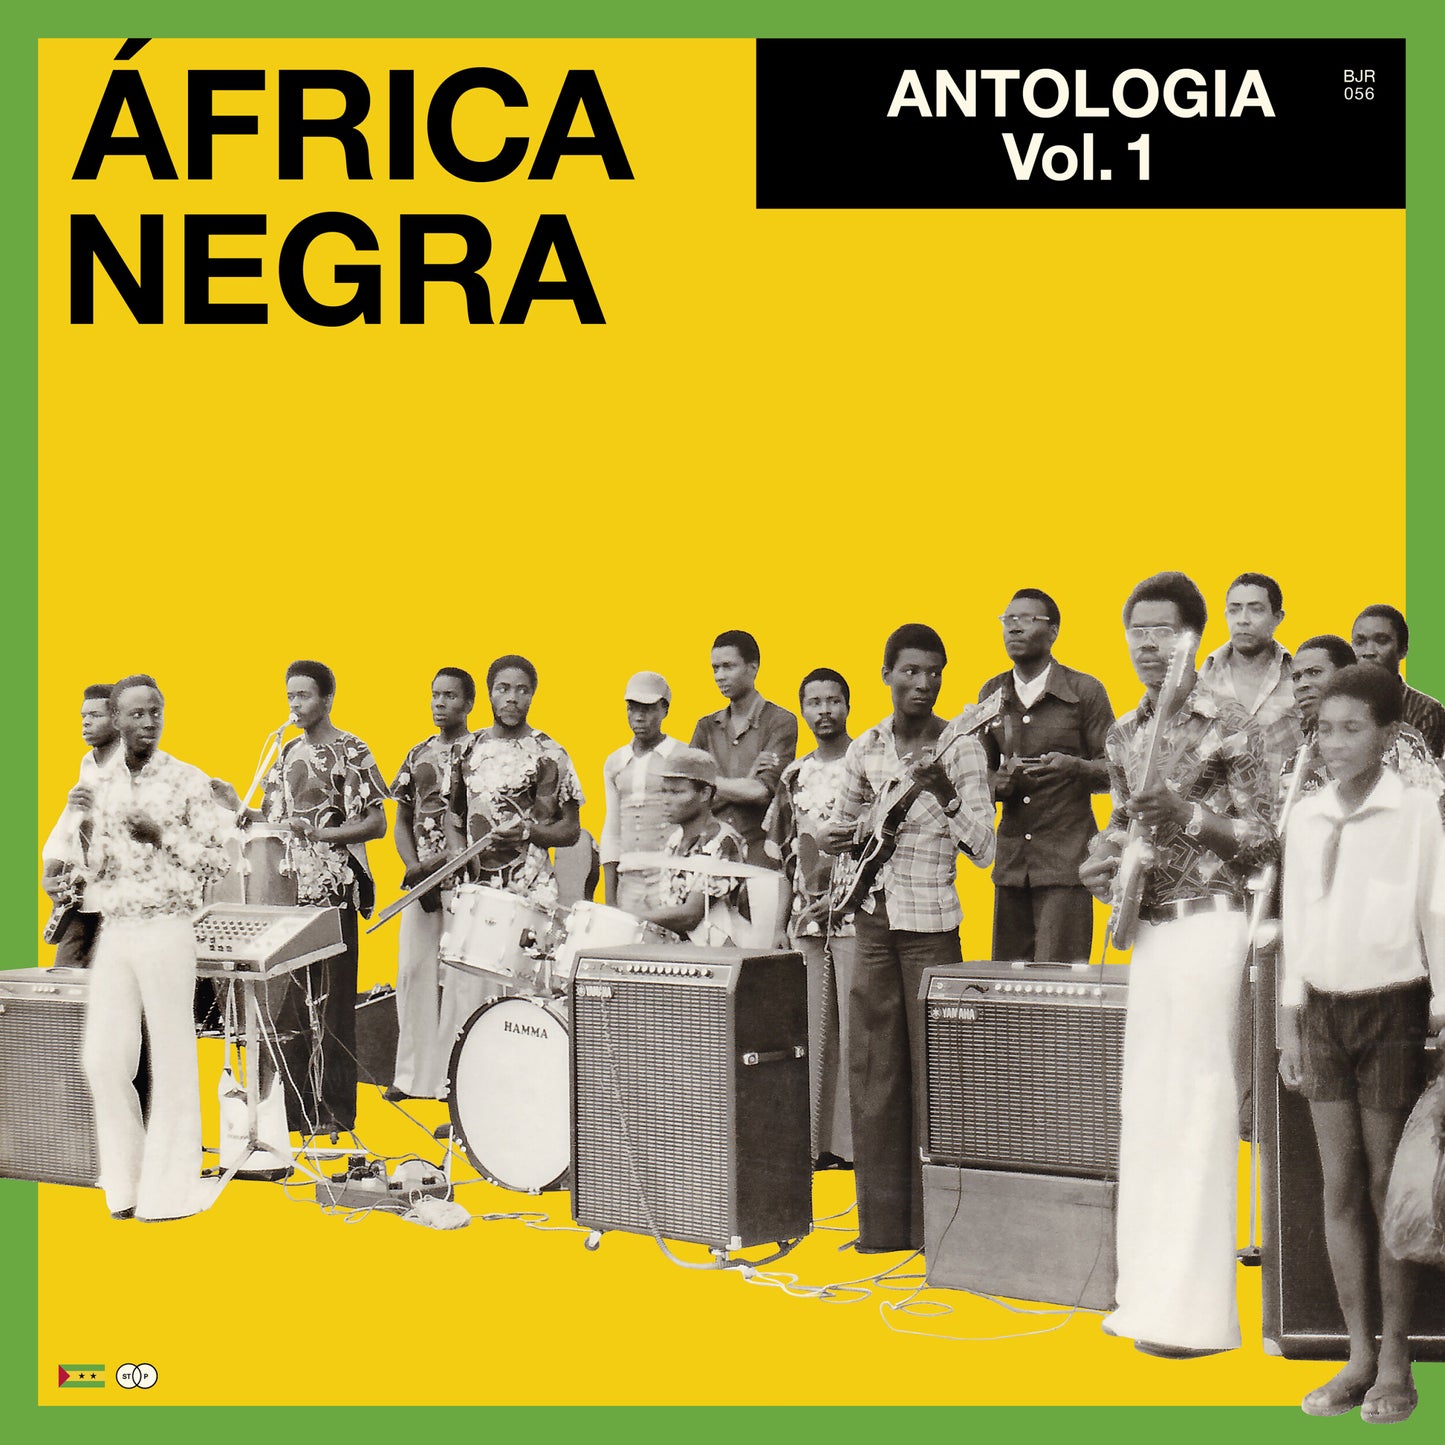 Africa Negra - Antologia Vol.1 - 2LP